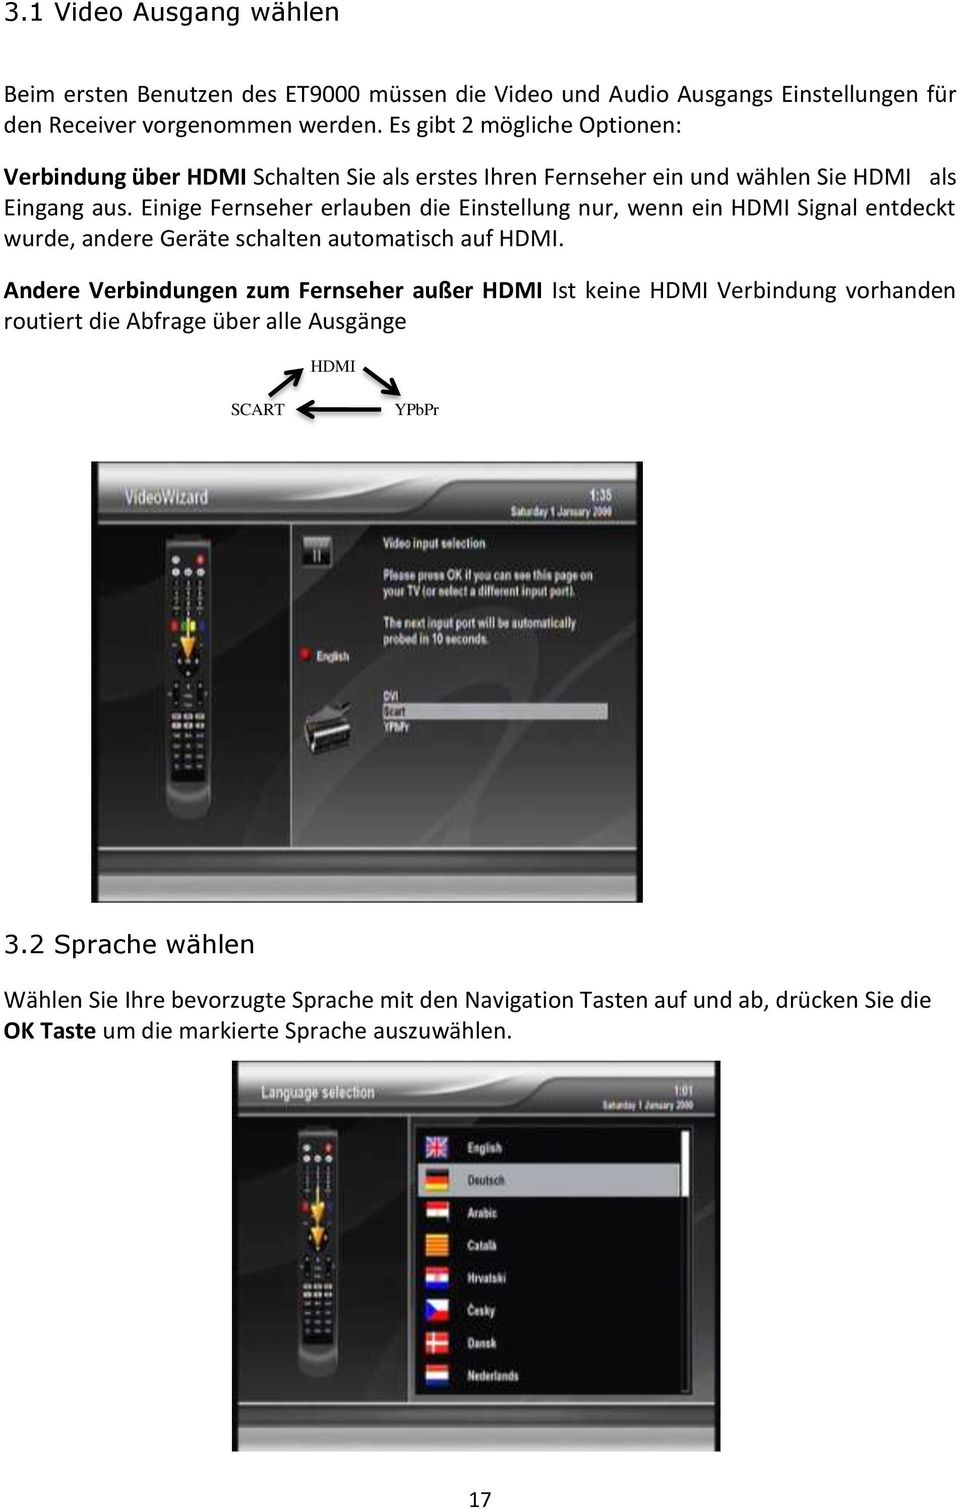 Einige Fernseher erlauben die Einstellung nur, wenn ein HDMI Signal entdeckt wurde, andere Geräte schalten automatisch auf HDMI.